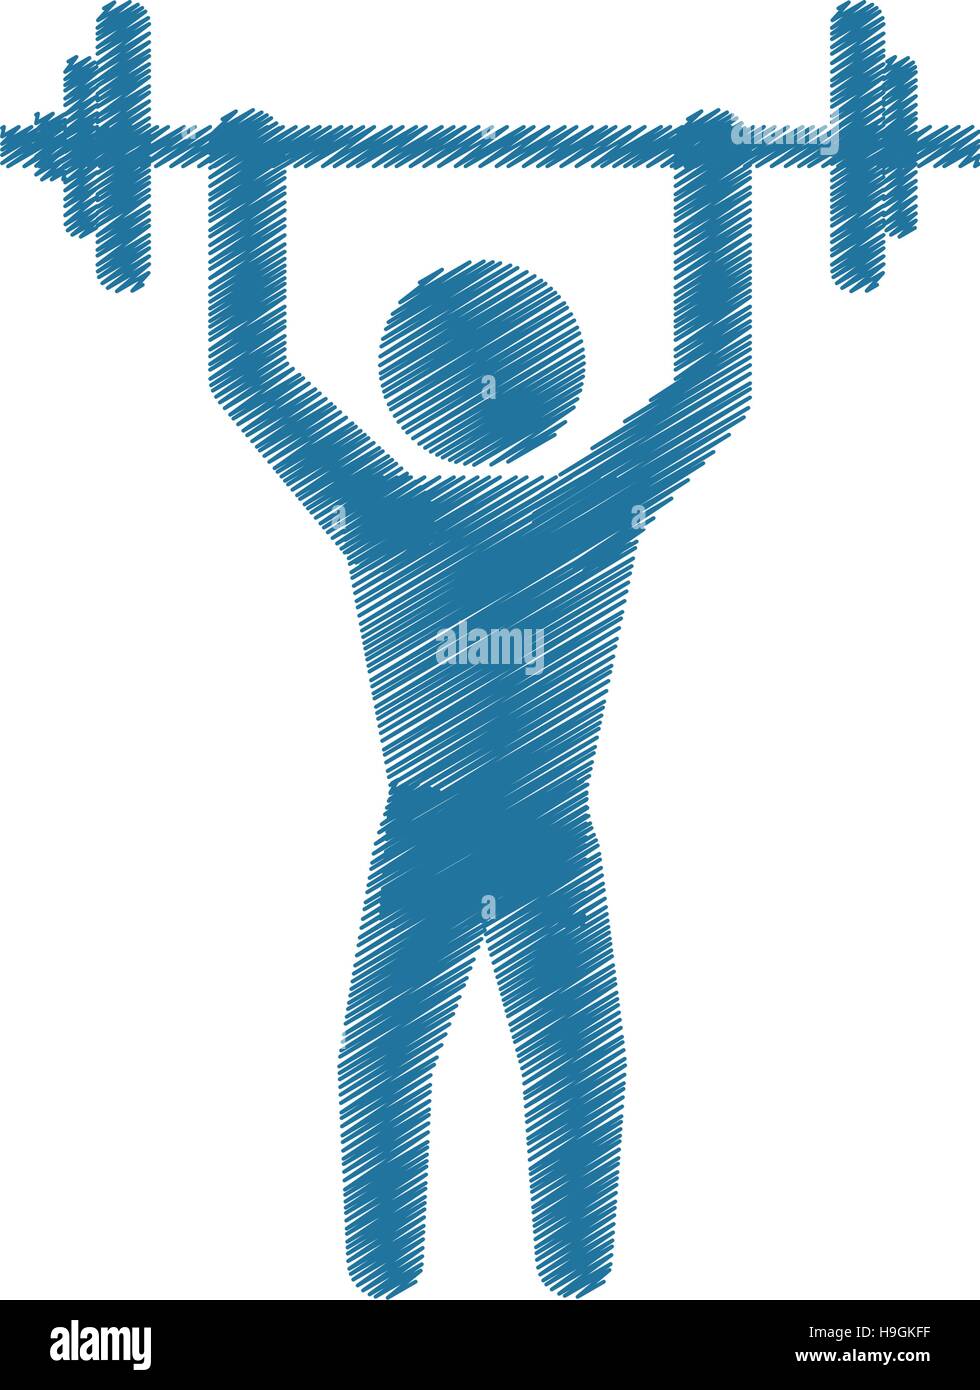 Zeichnung farbig Silhouette Mann Fitnessraum Gewicht Hantel  Stock-Vektorgrafik - Alamy